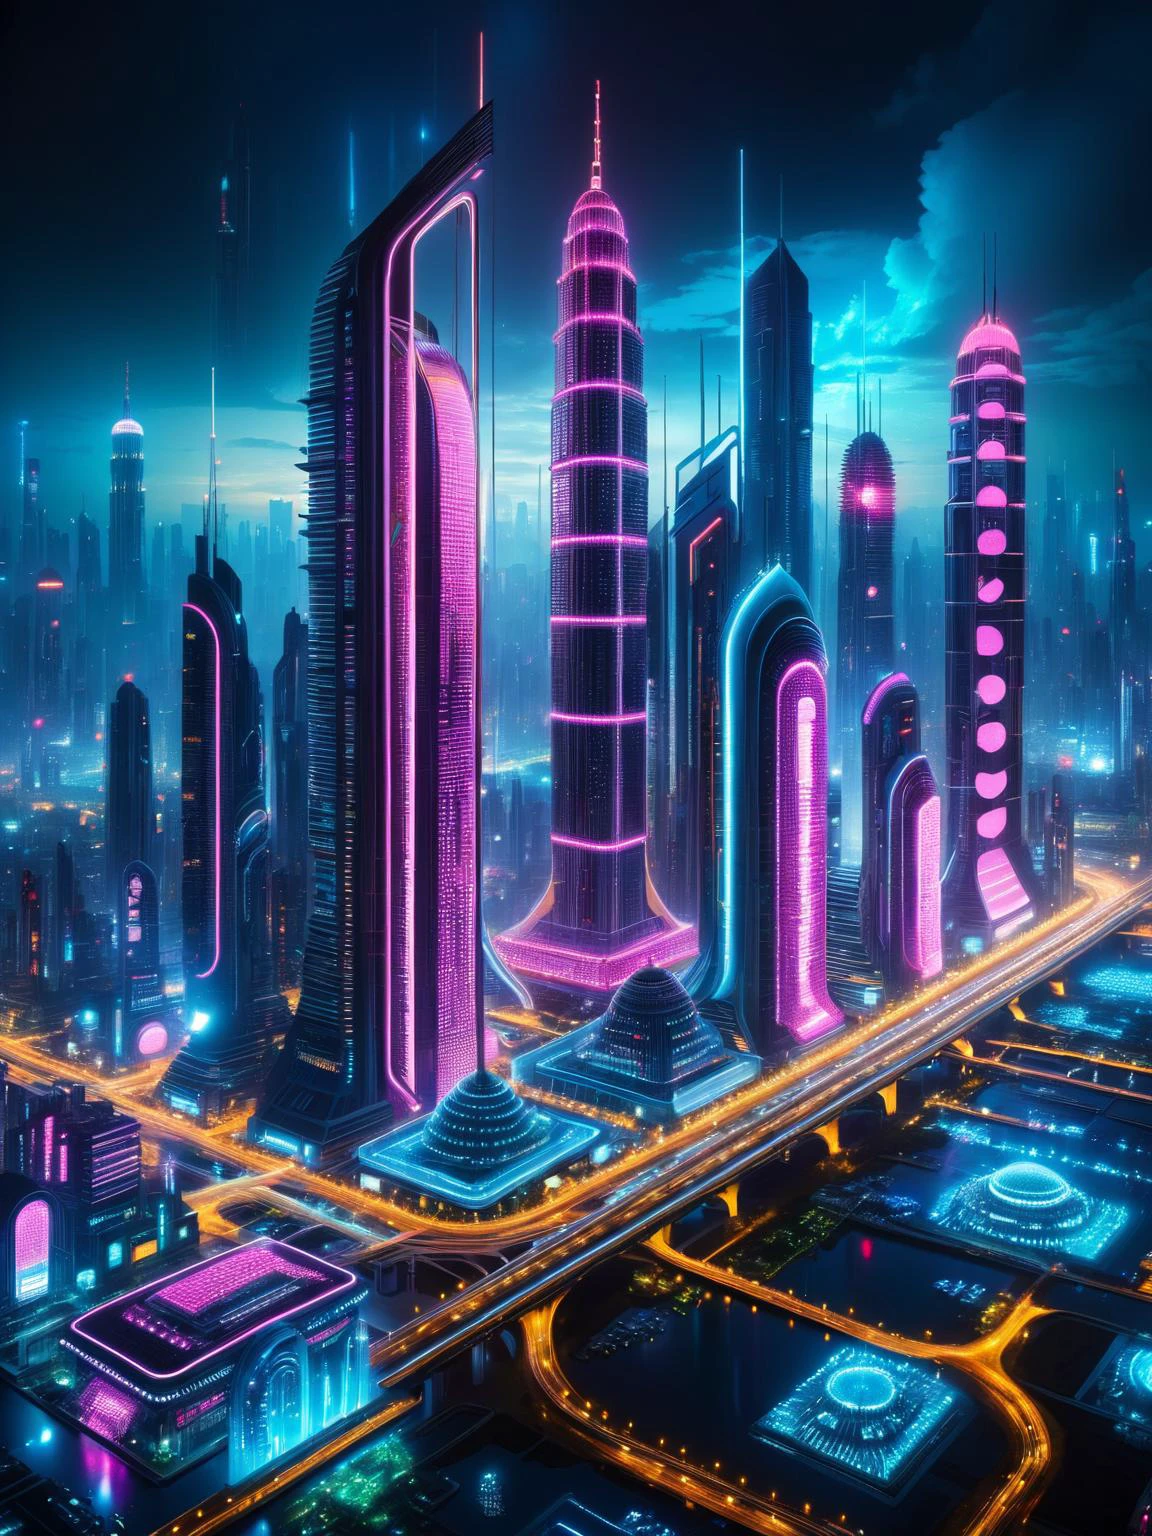 Ciudad futurista de noche iluminada con vibrantes luces LED, mostrando arquitectura surrealista y estética cyberpunk.